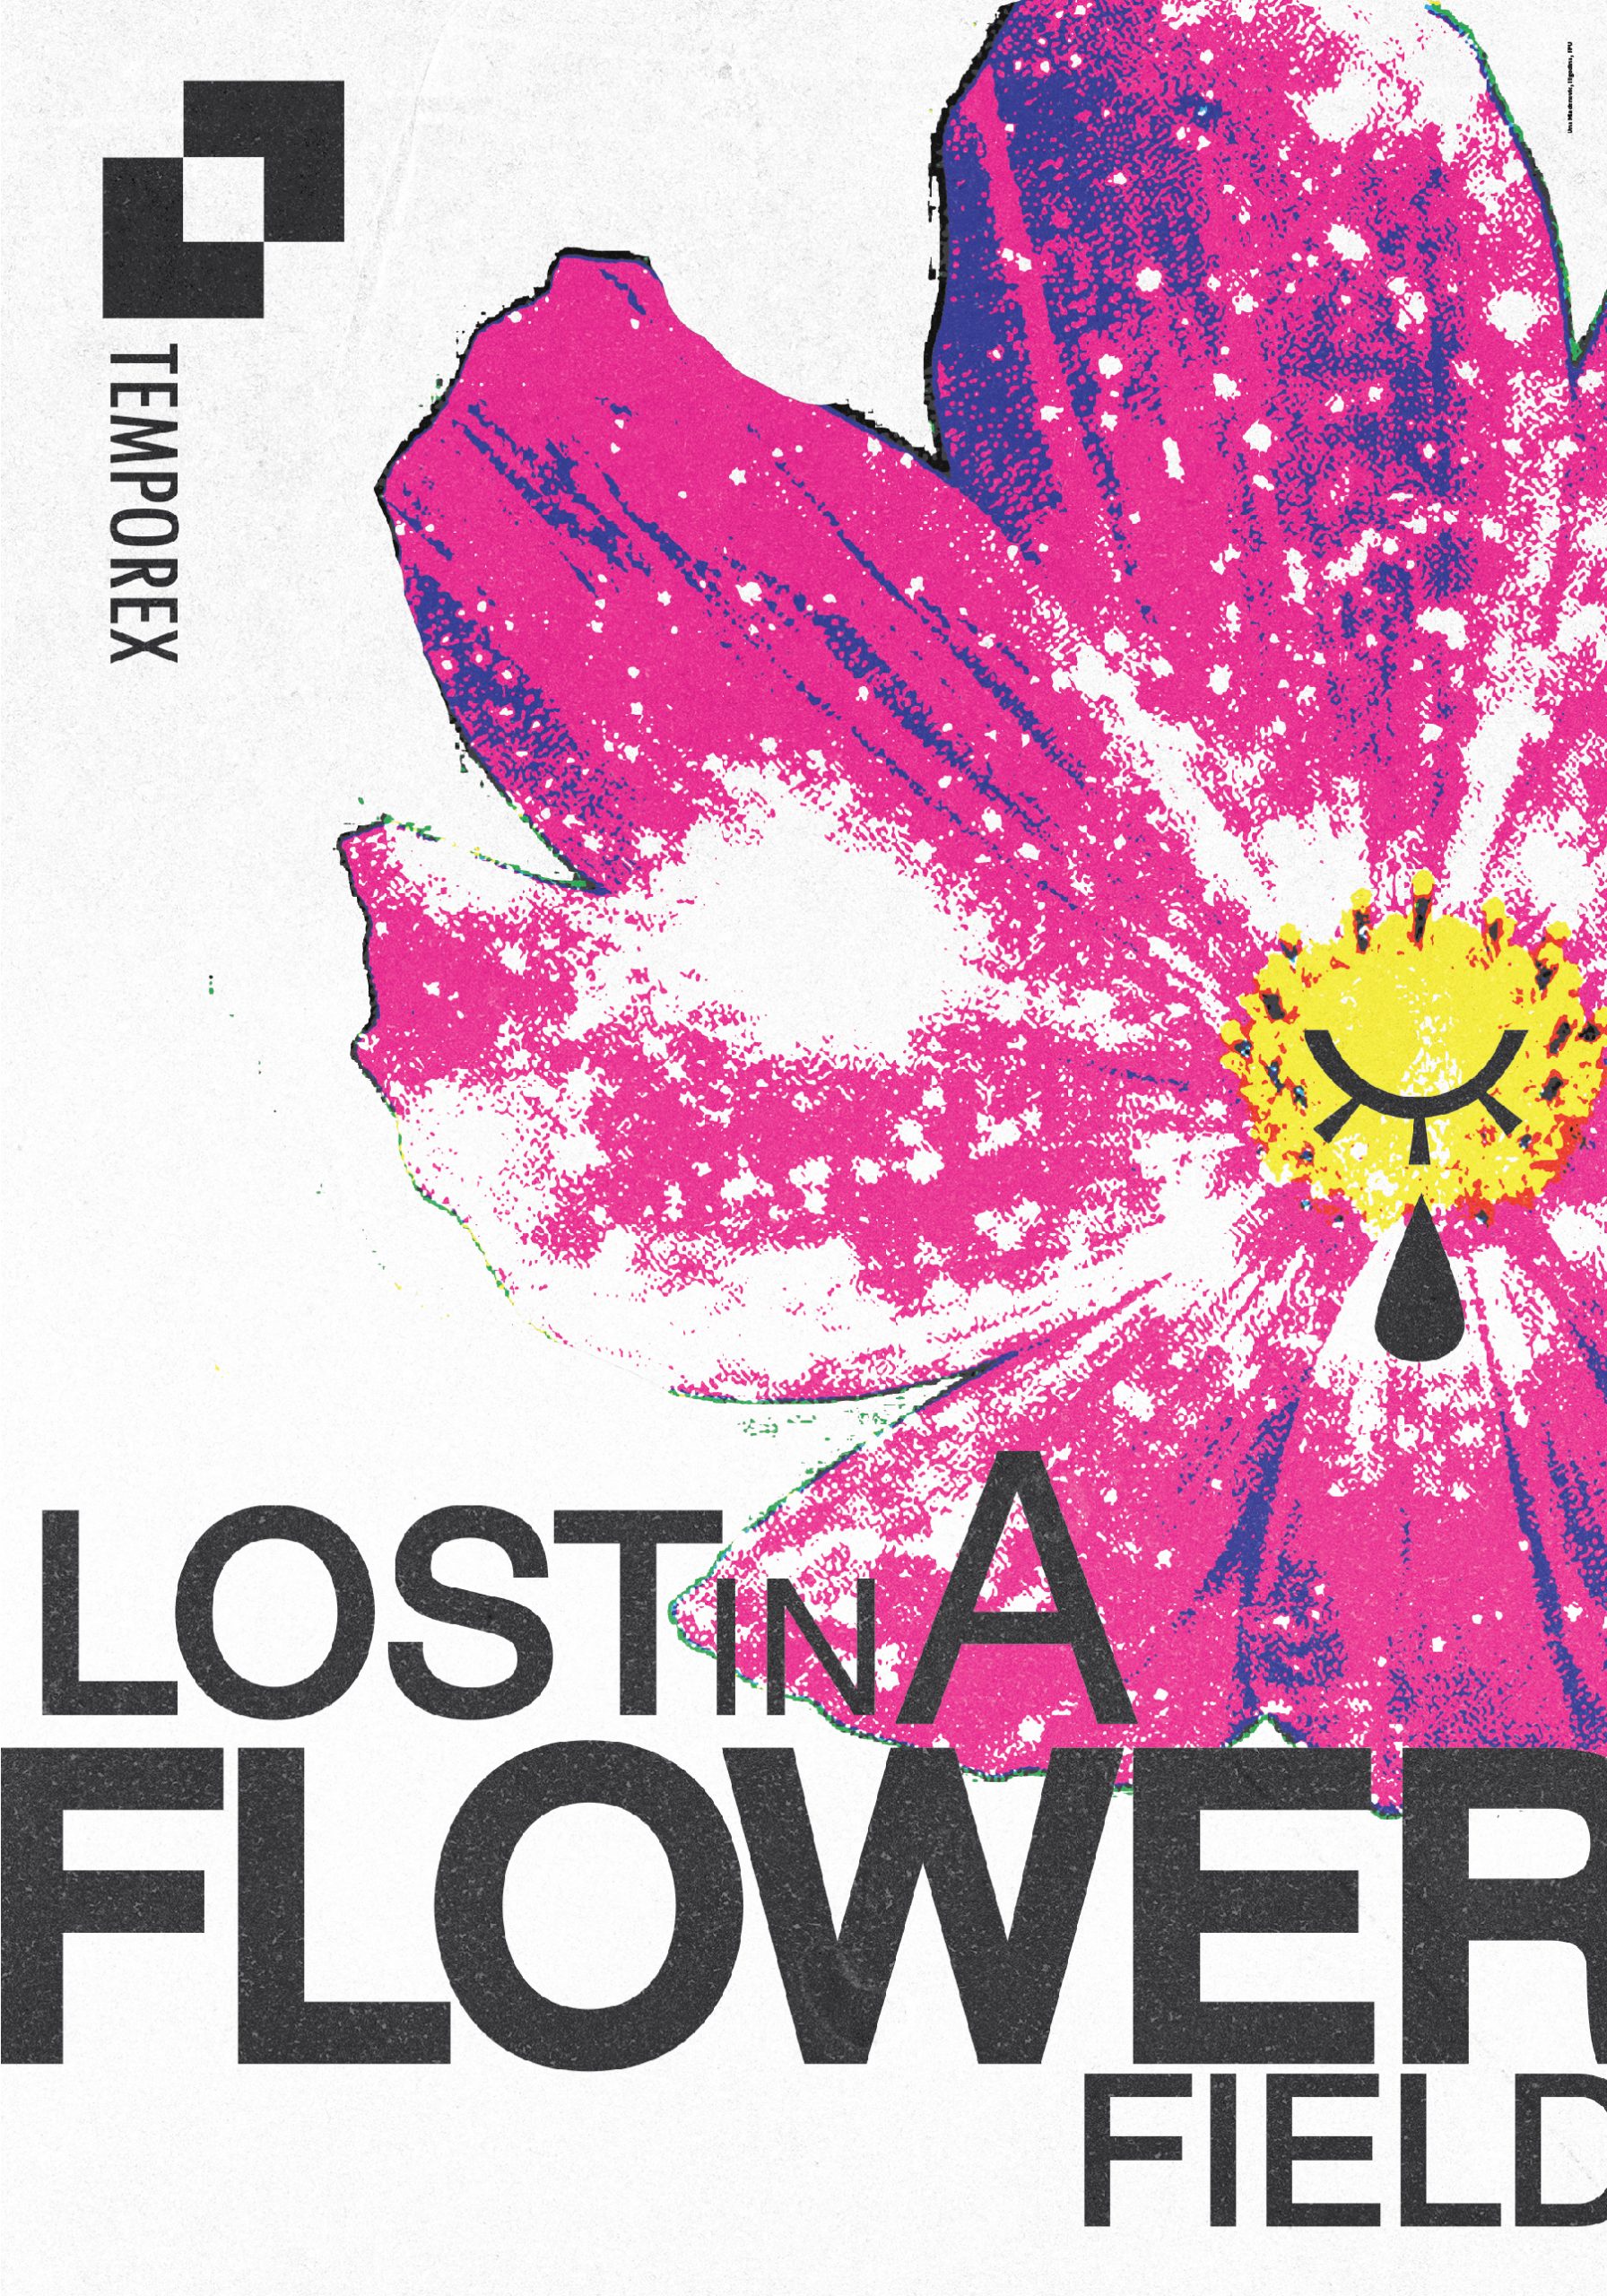 03 Lost in a flower field